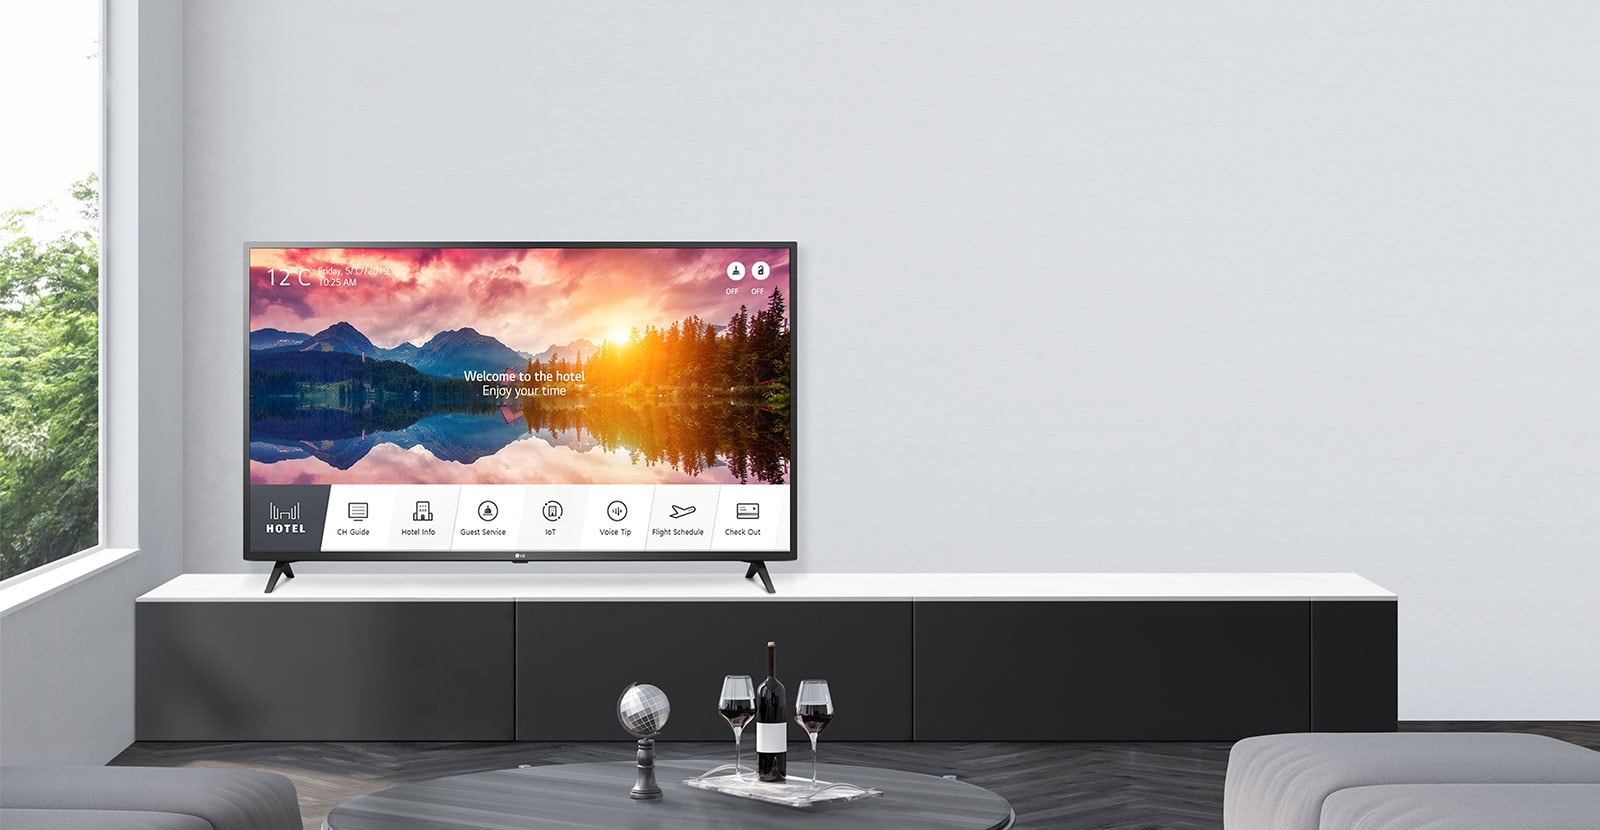 LG Smart Hotel TV với chức năng quản lý nội dung hiệu quả